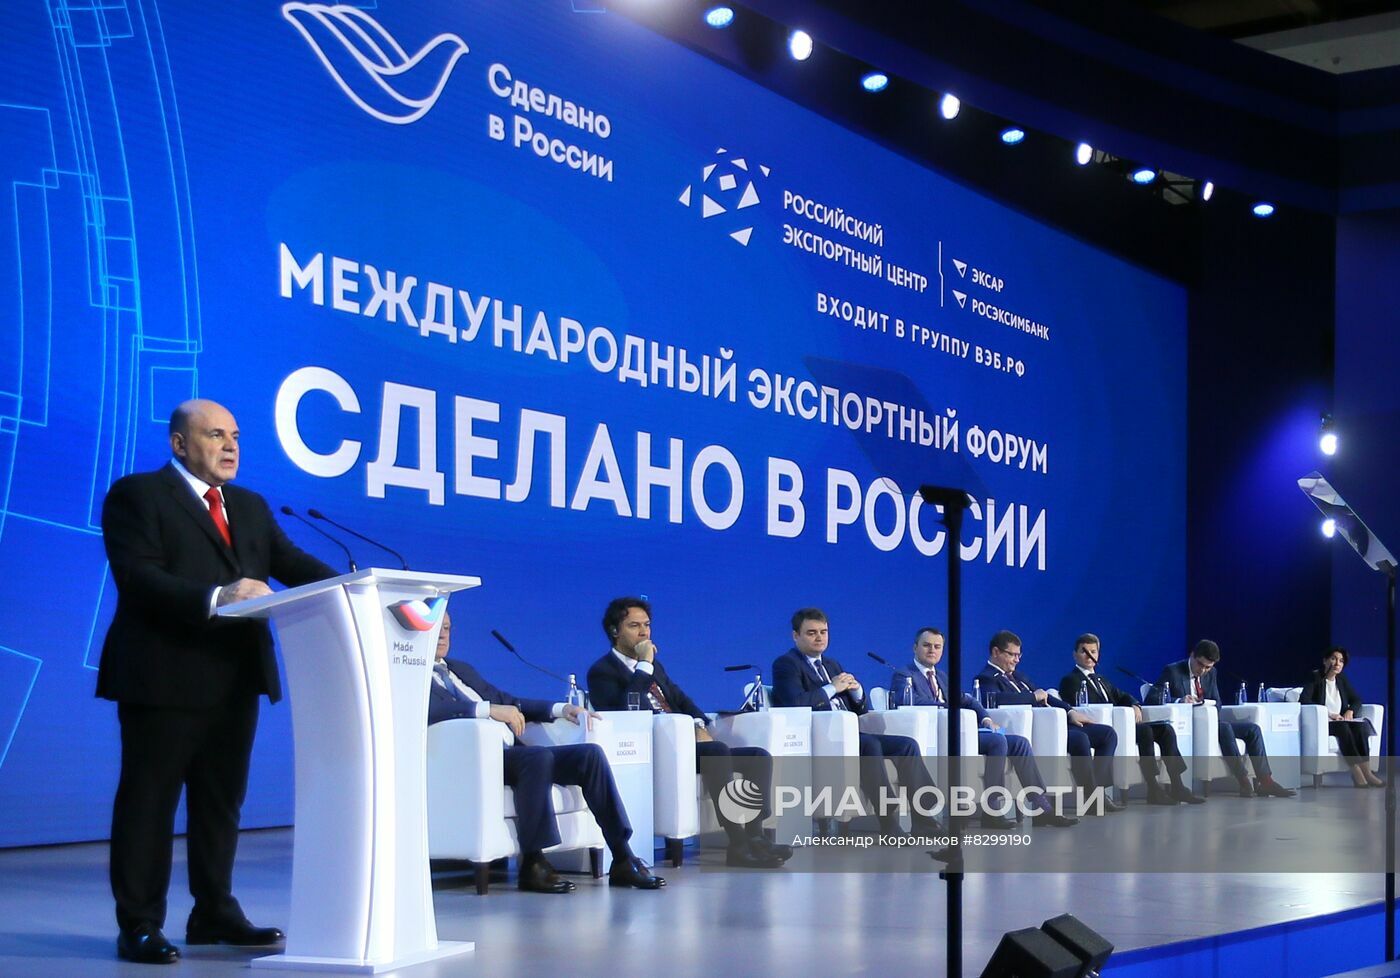 Главный экспортный форум страны «Сделано в России» начнет свою работу через 3 недели